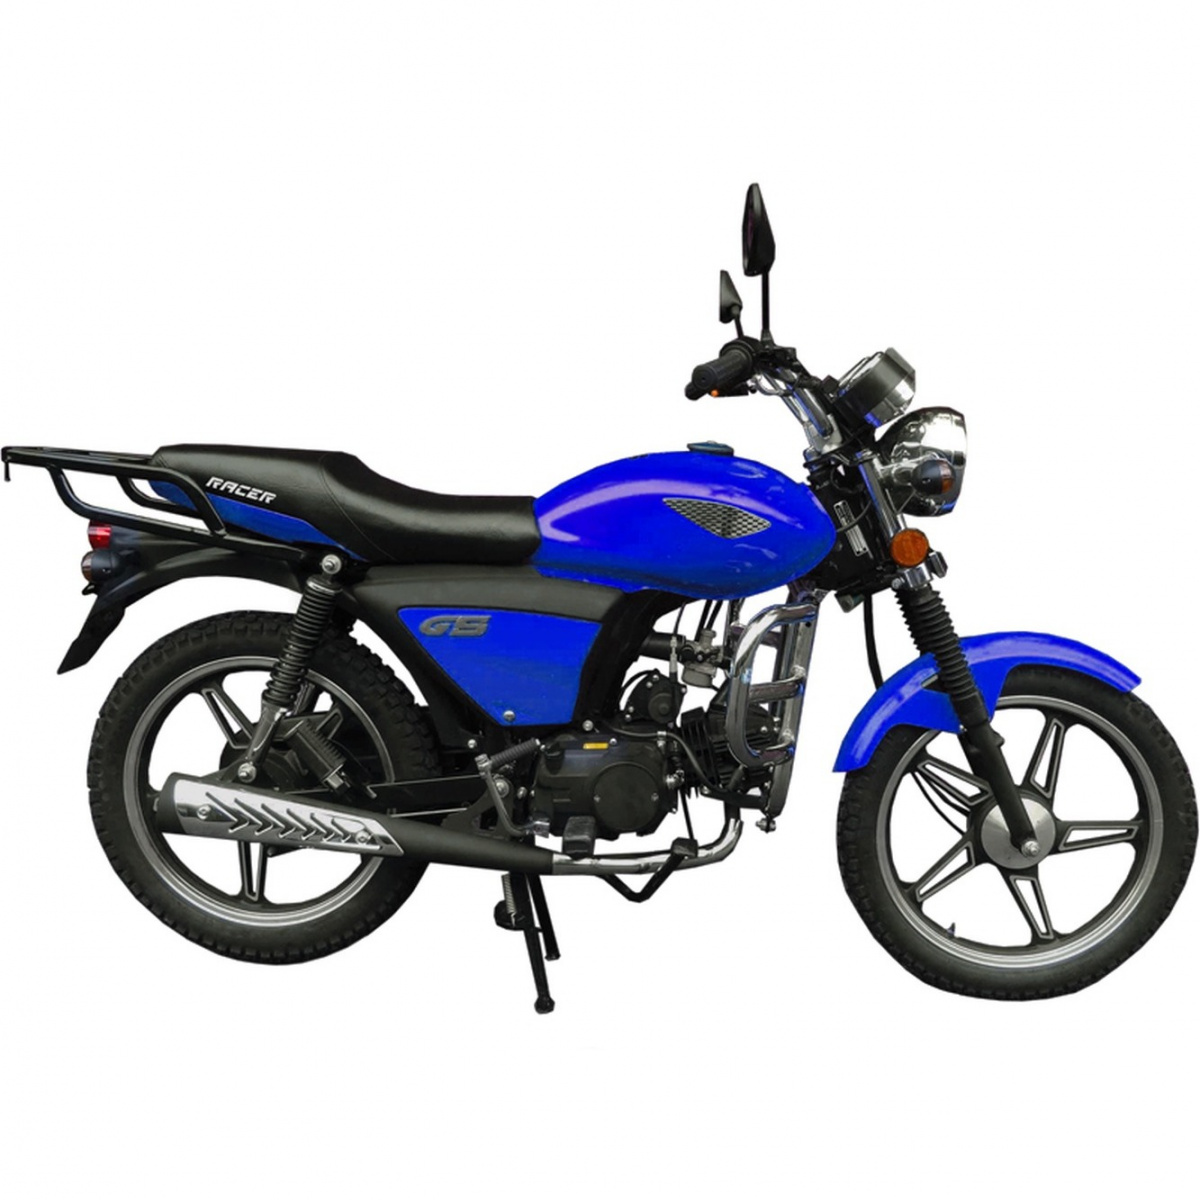 Мотоцикл xp 4t 110 (2006): технические характеристики, фото, видео